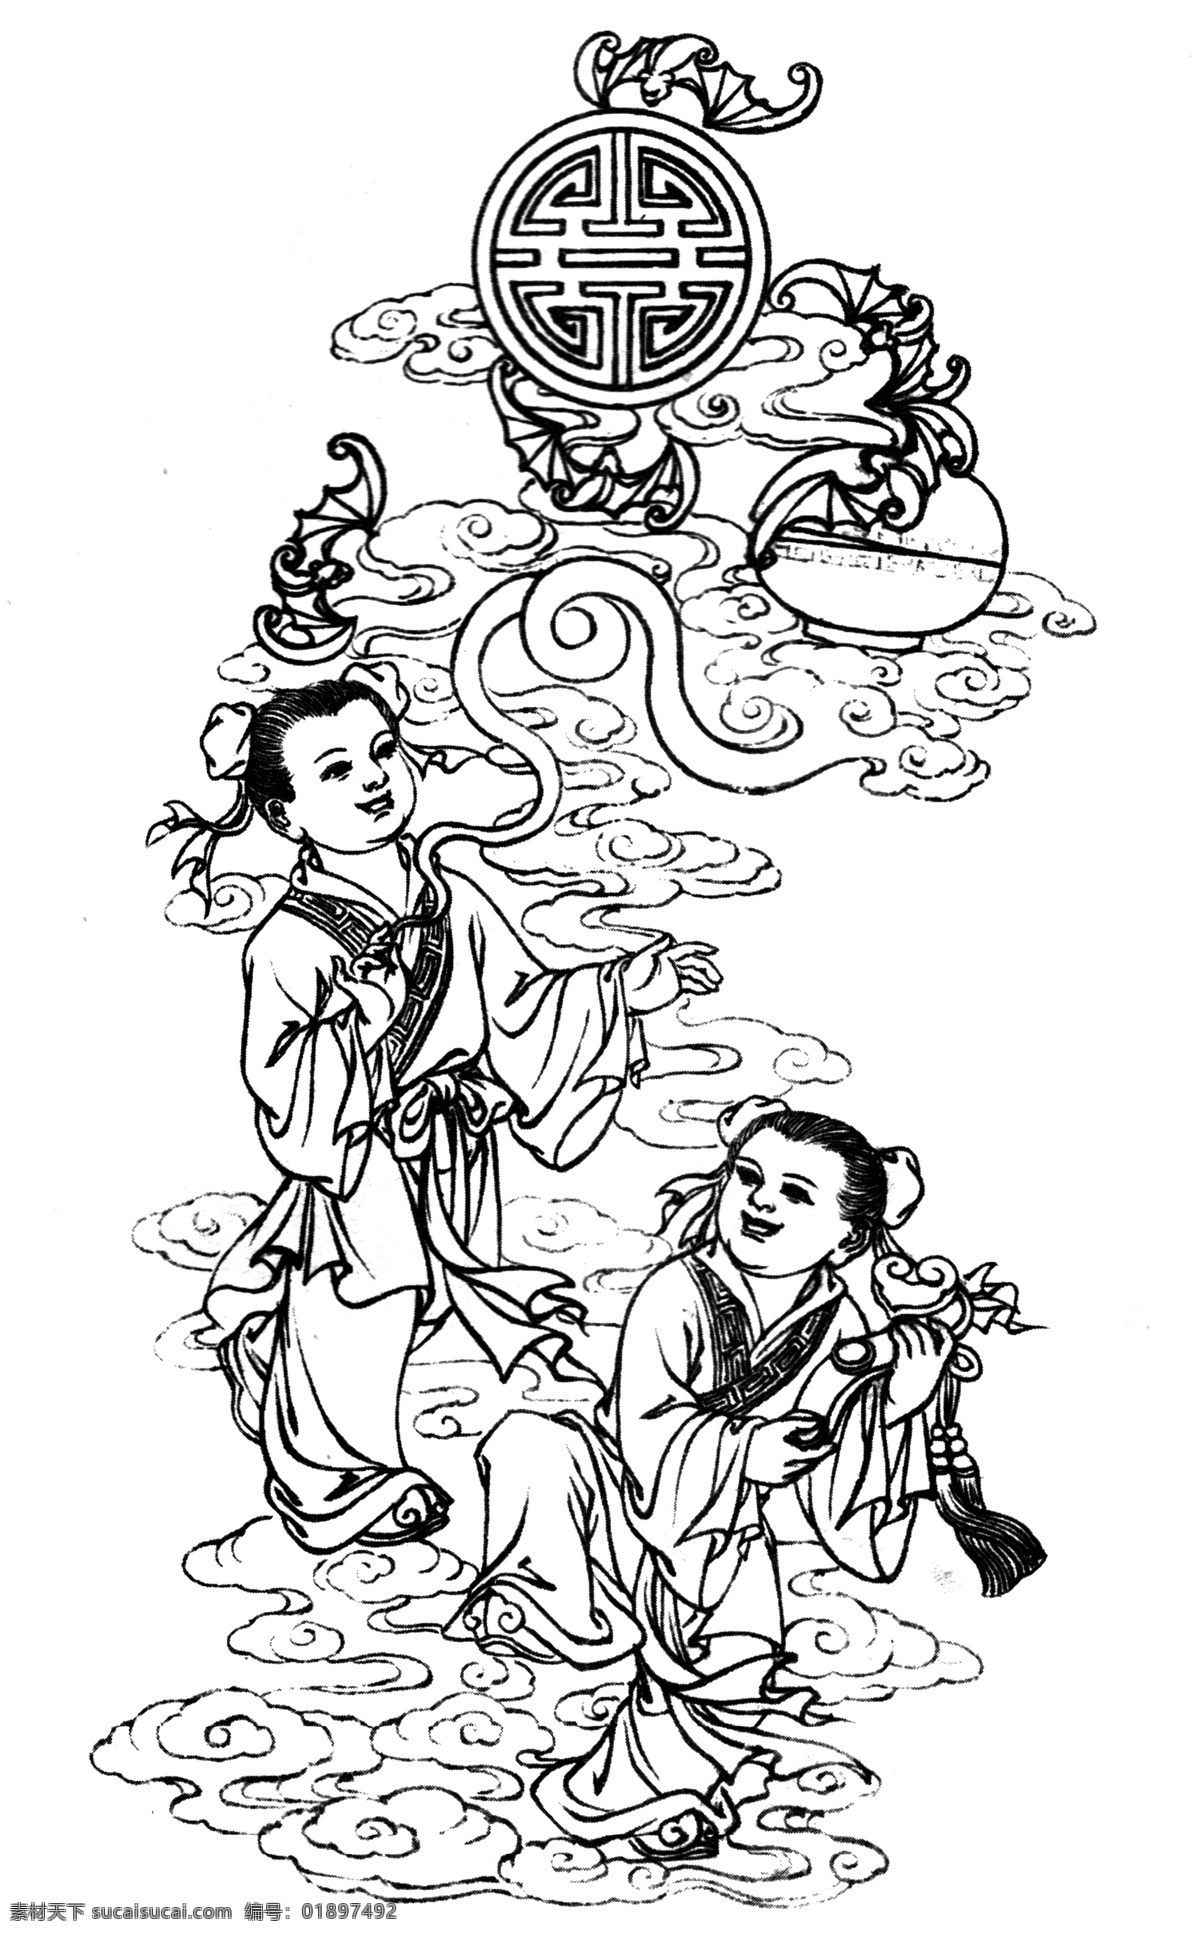 福寿和合 白描 图案 绘画 古典 传统纹样 人物 神话传说 白描人物 传统文化 文化艺术